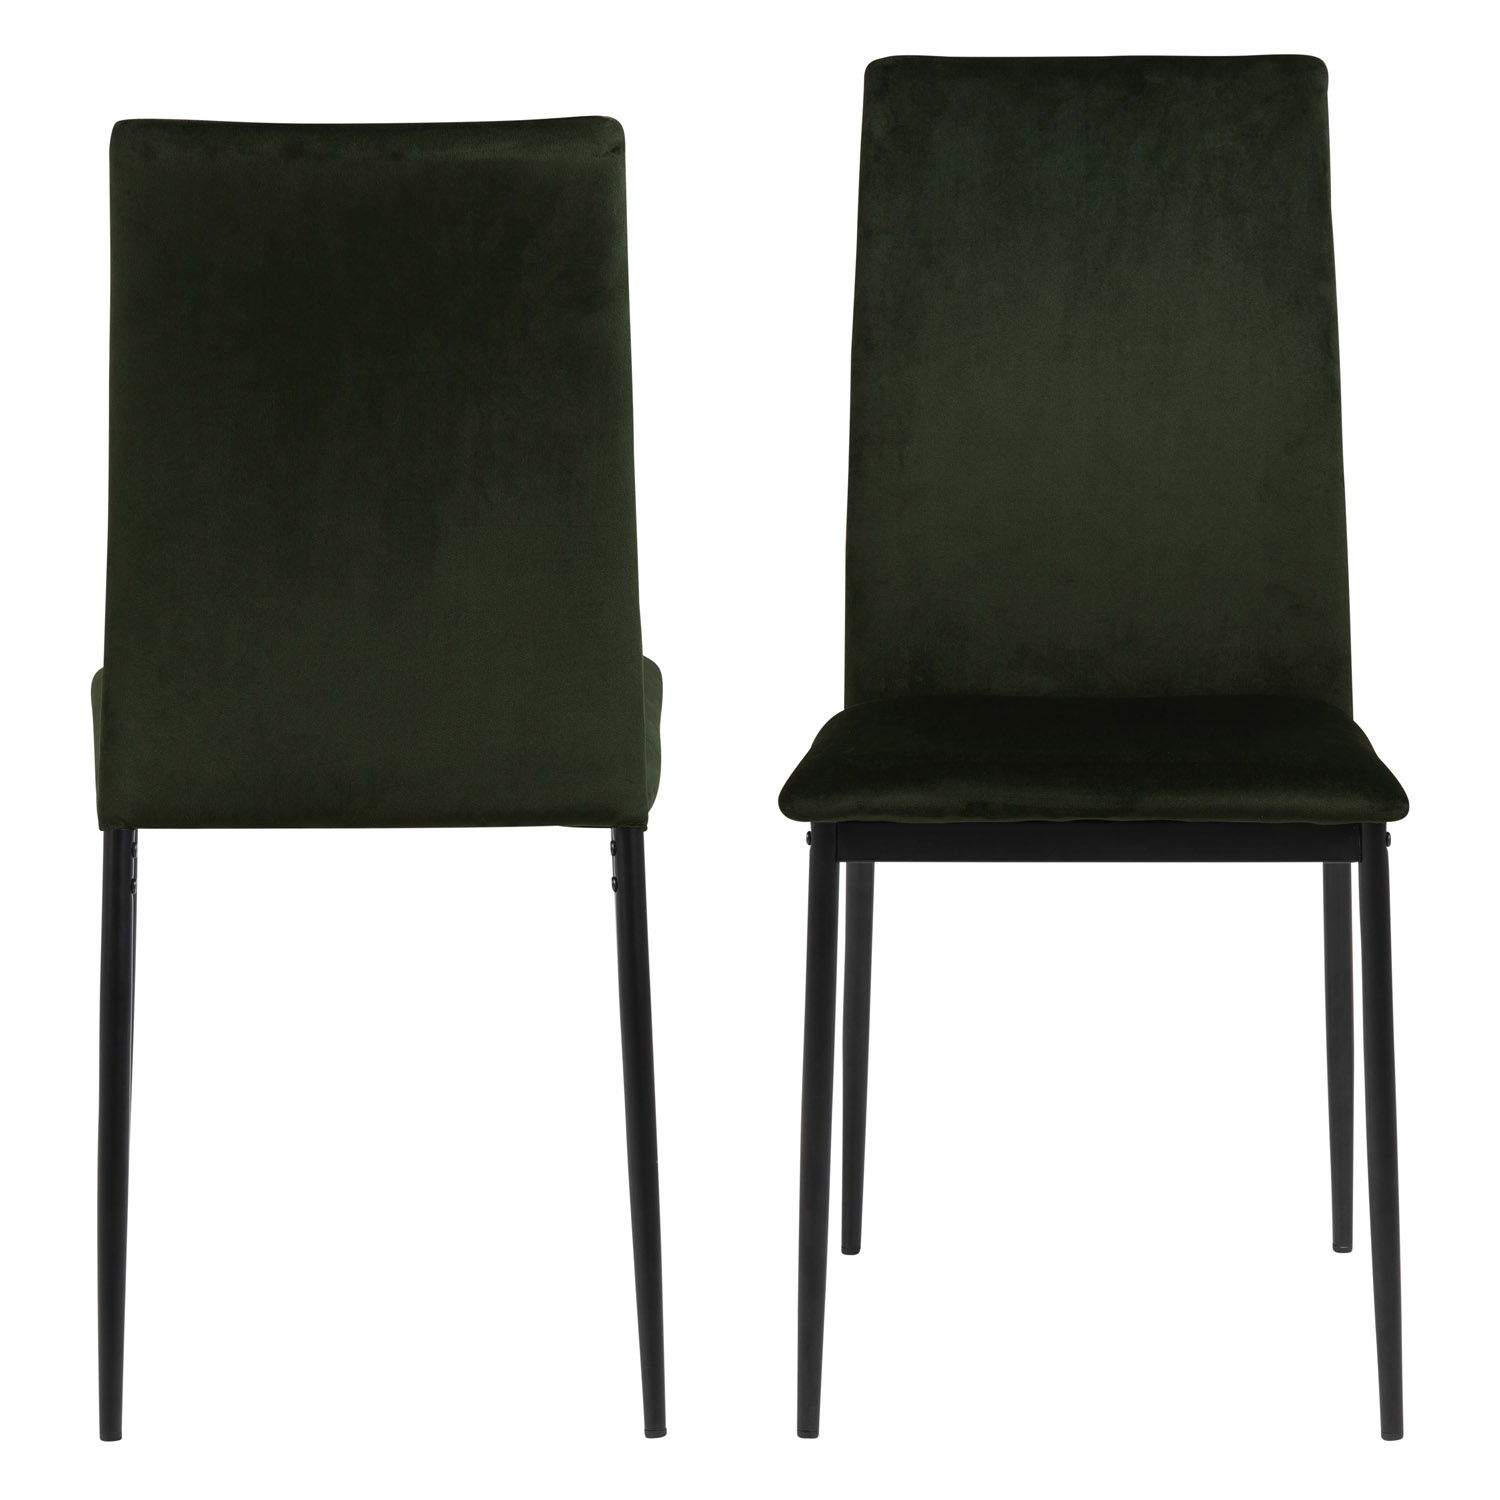 ACT NORDIC Demina spisebordsstol - olivengrøn polyester og sort metal